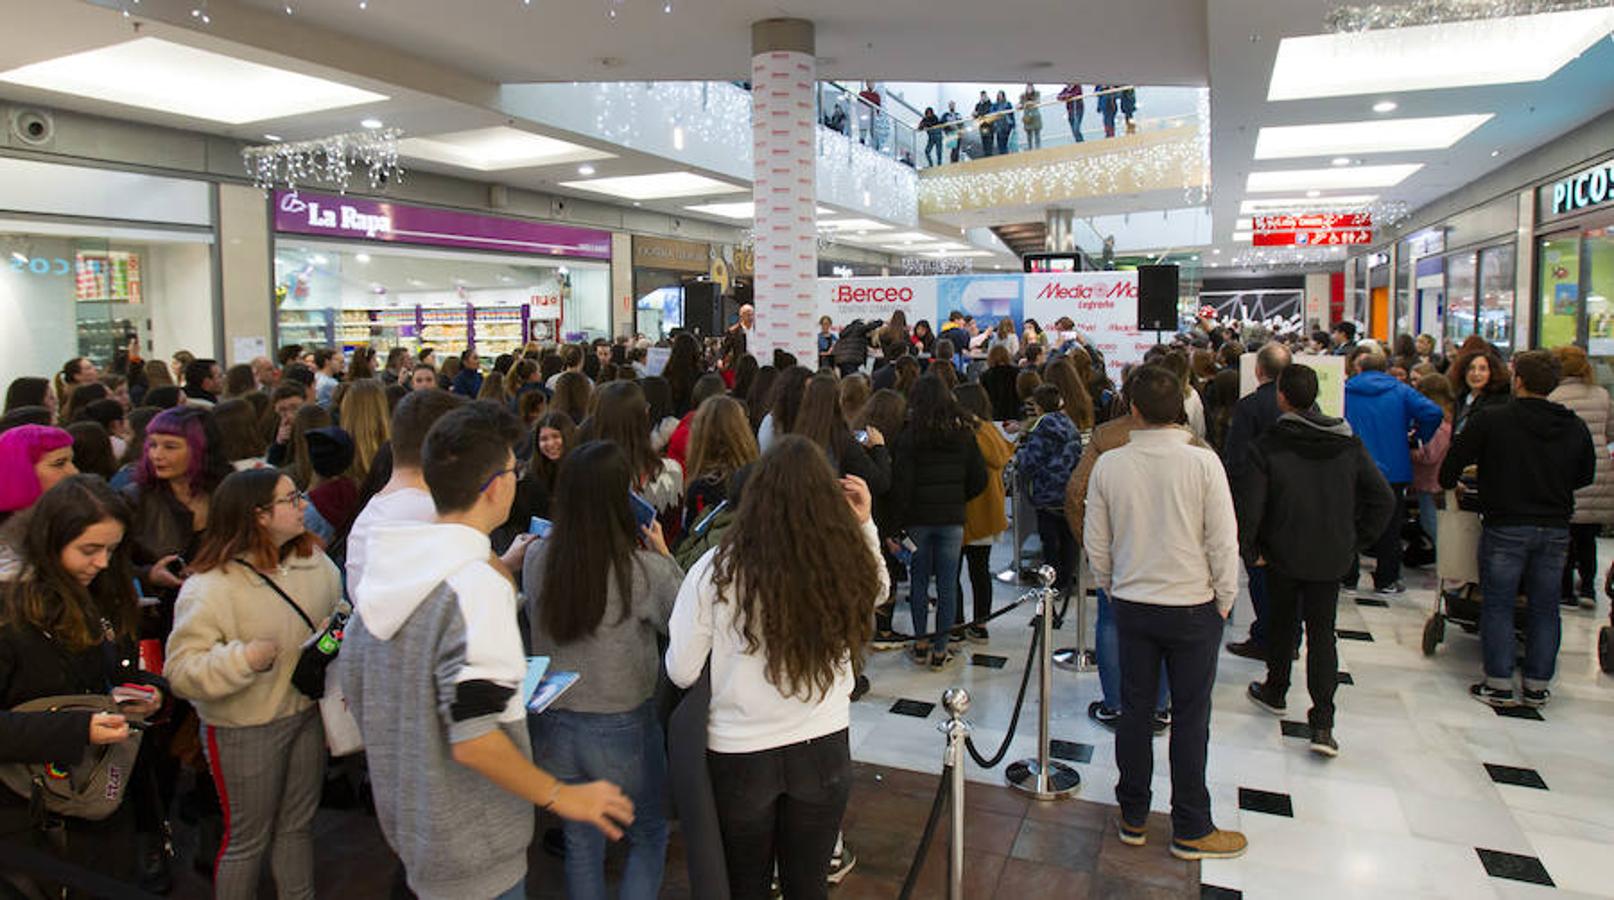 Fotos: Los chicos de OT firman discos en el Centro Comercial Berceo